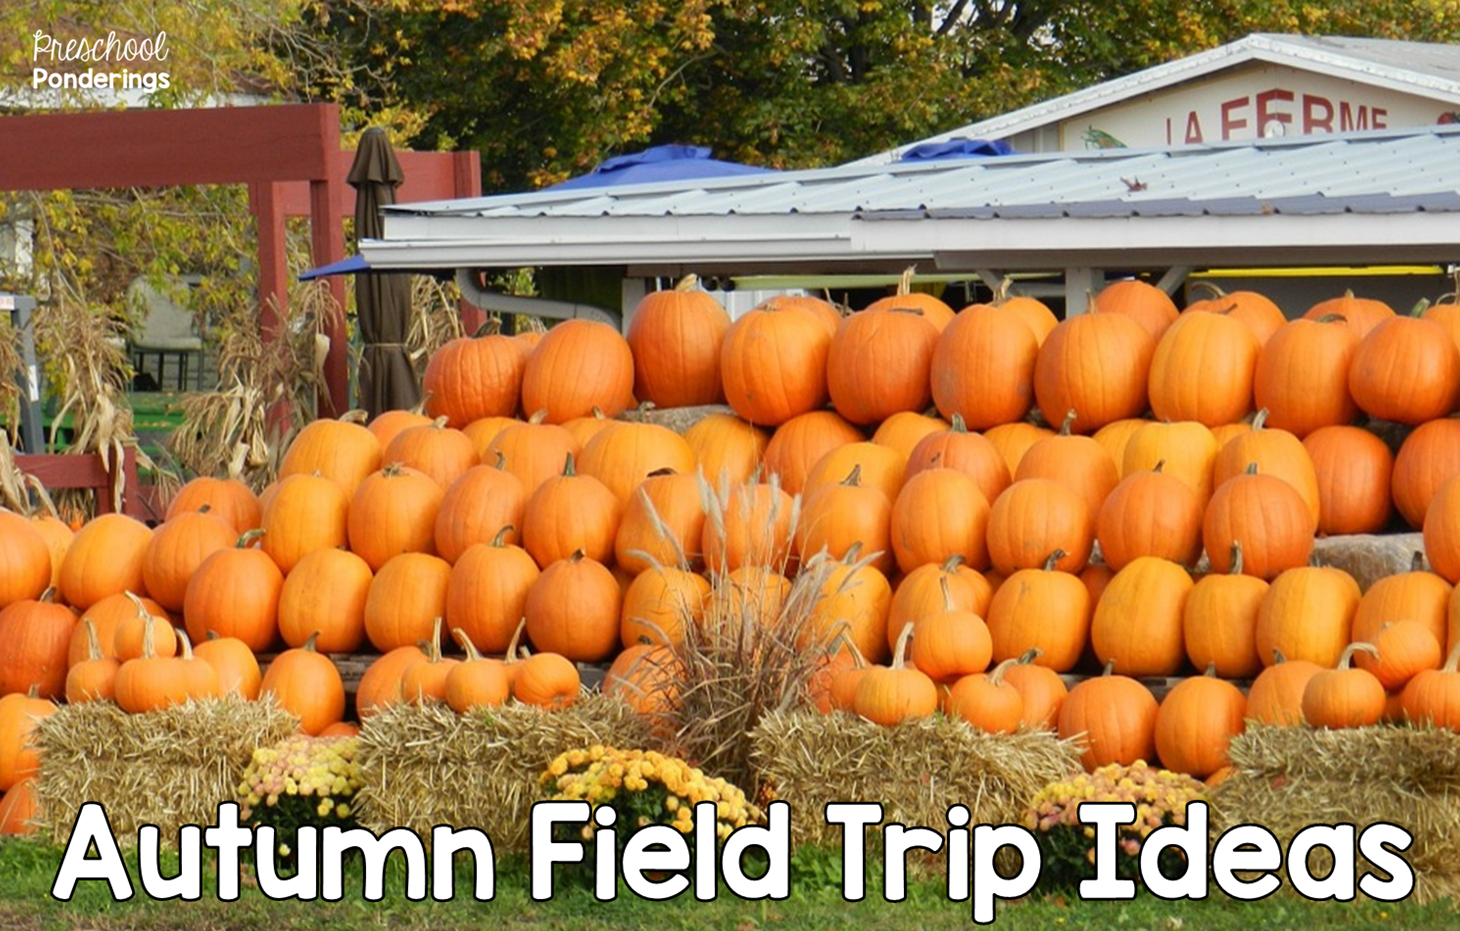 Preschool Ponderings: Autumn Field Trip Ideas